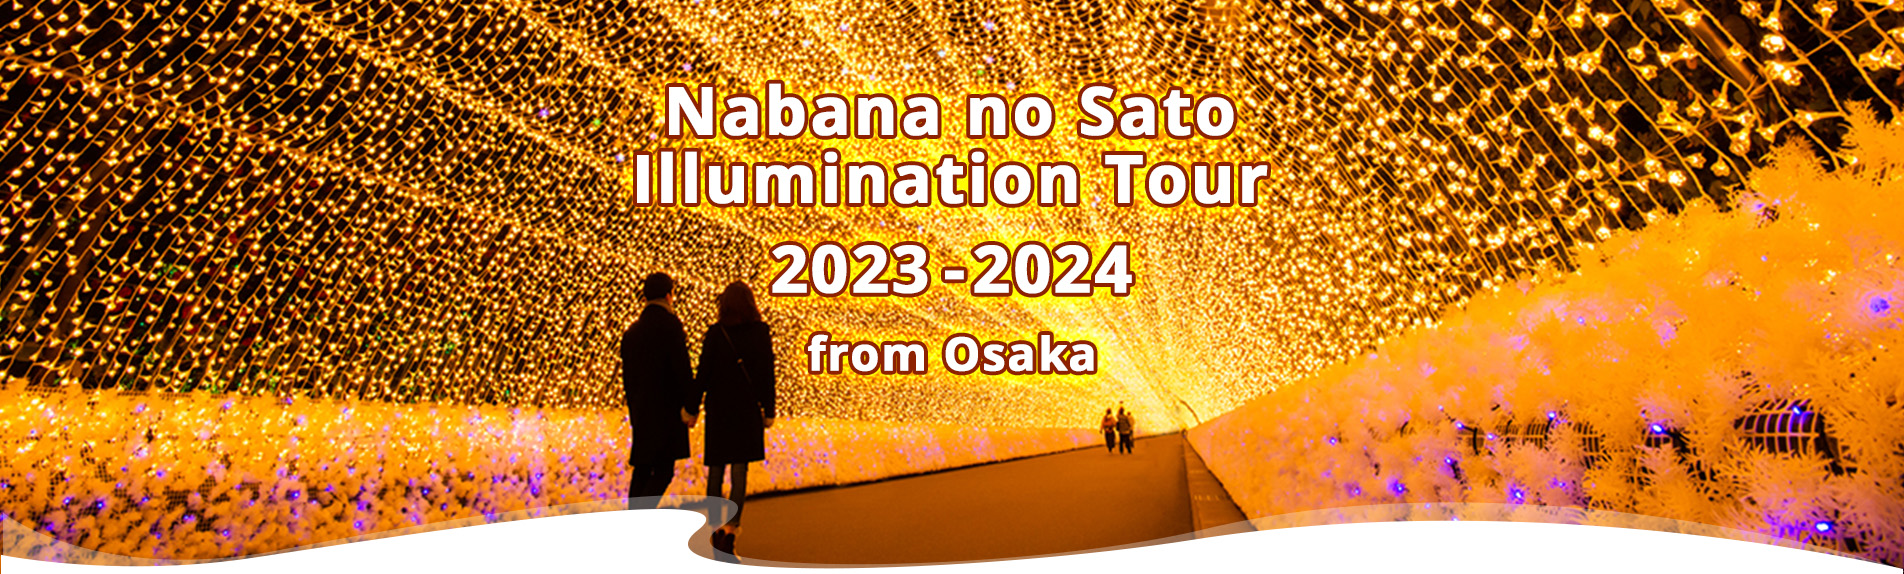 Nabana no Sato Illumination & Nagashima Spaland from Osaka